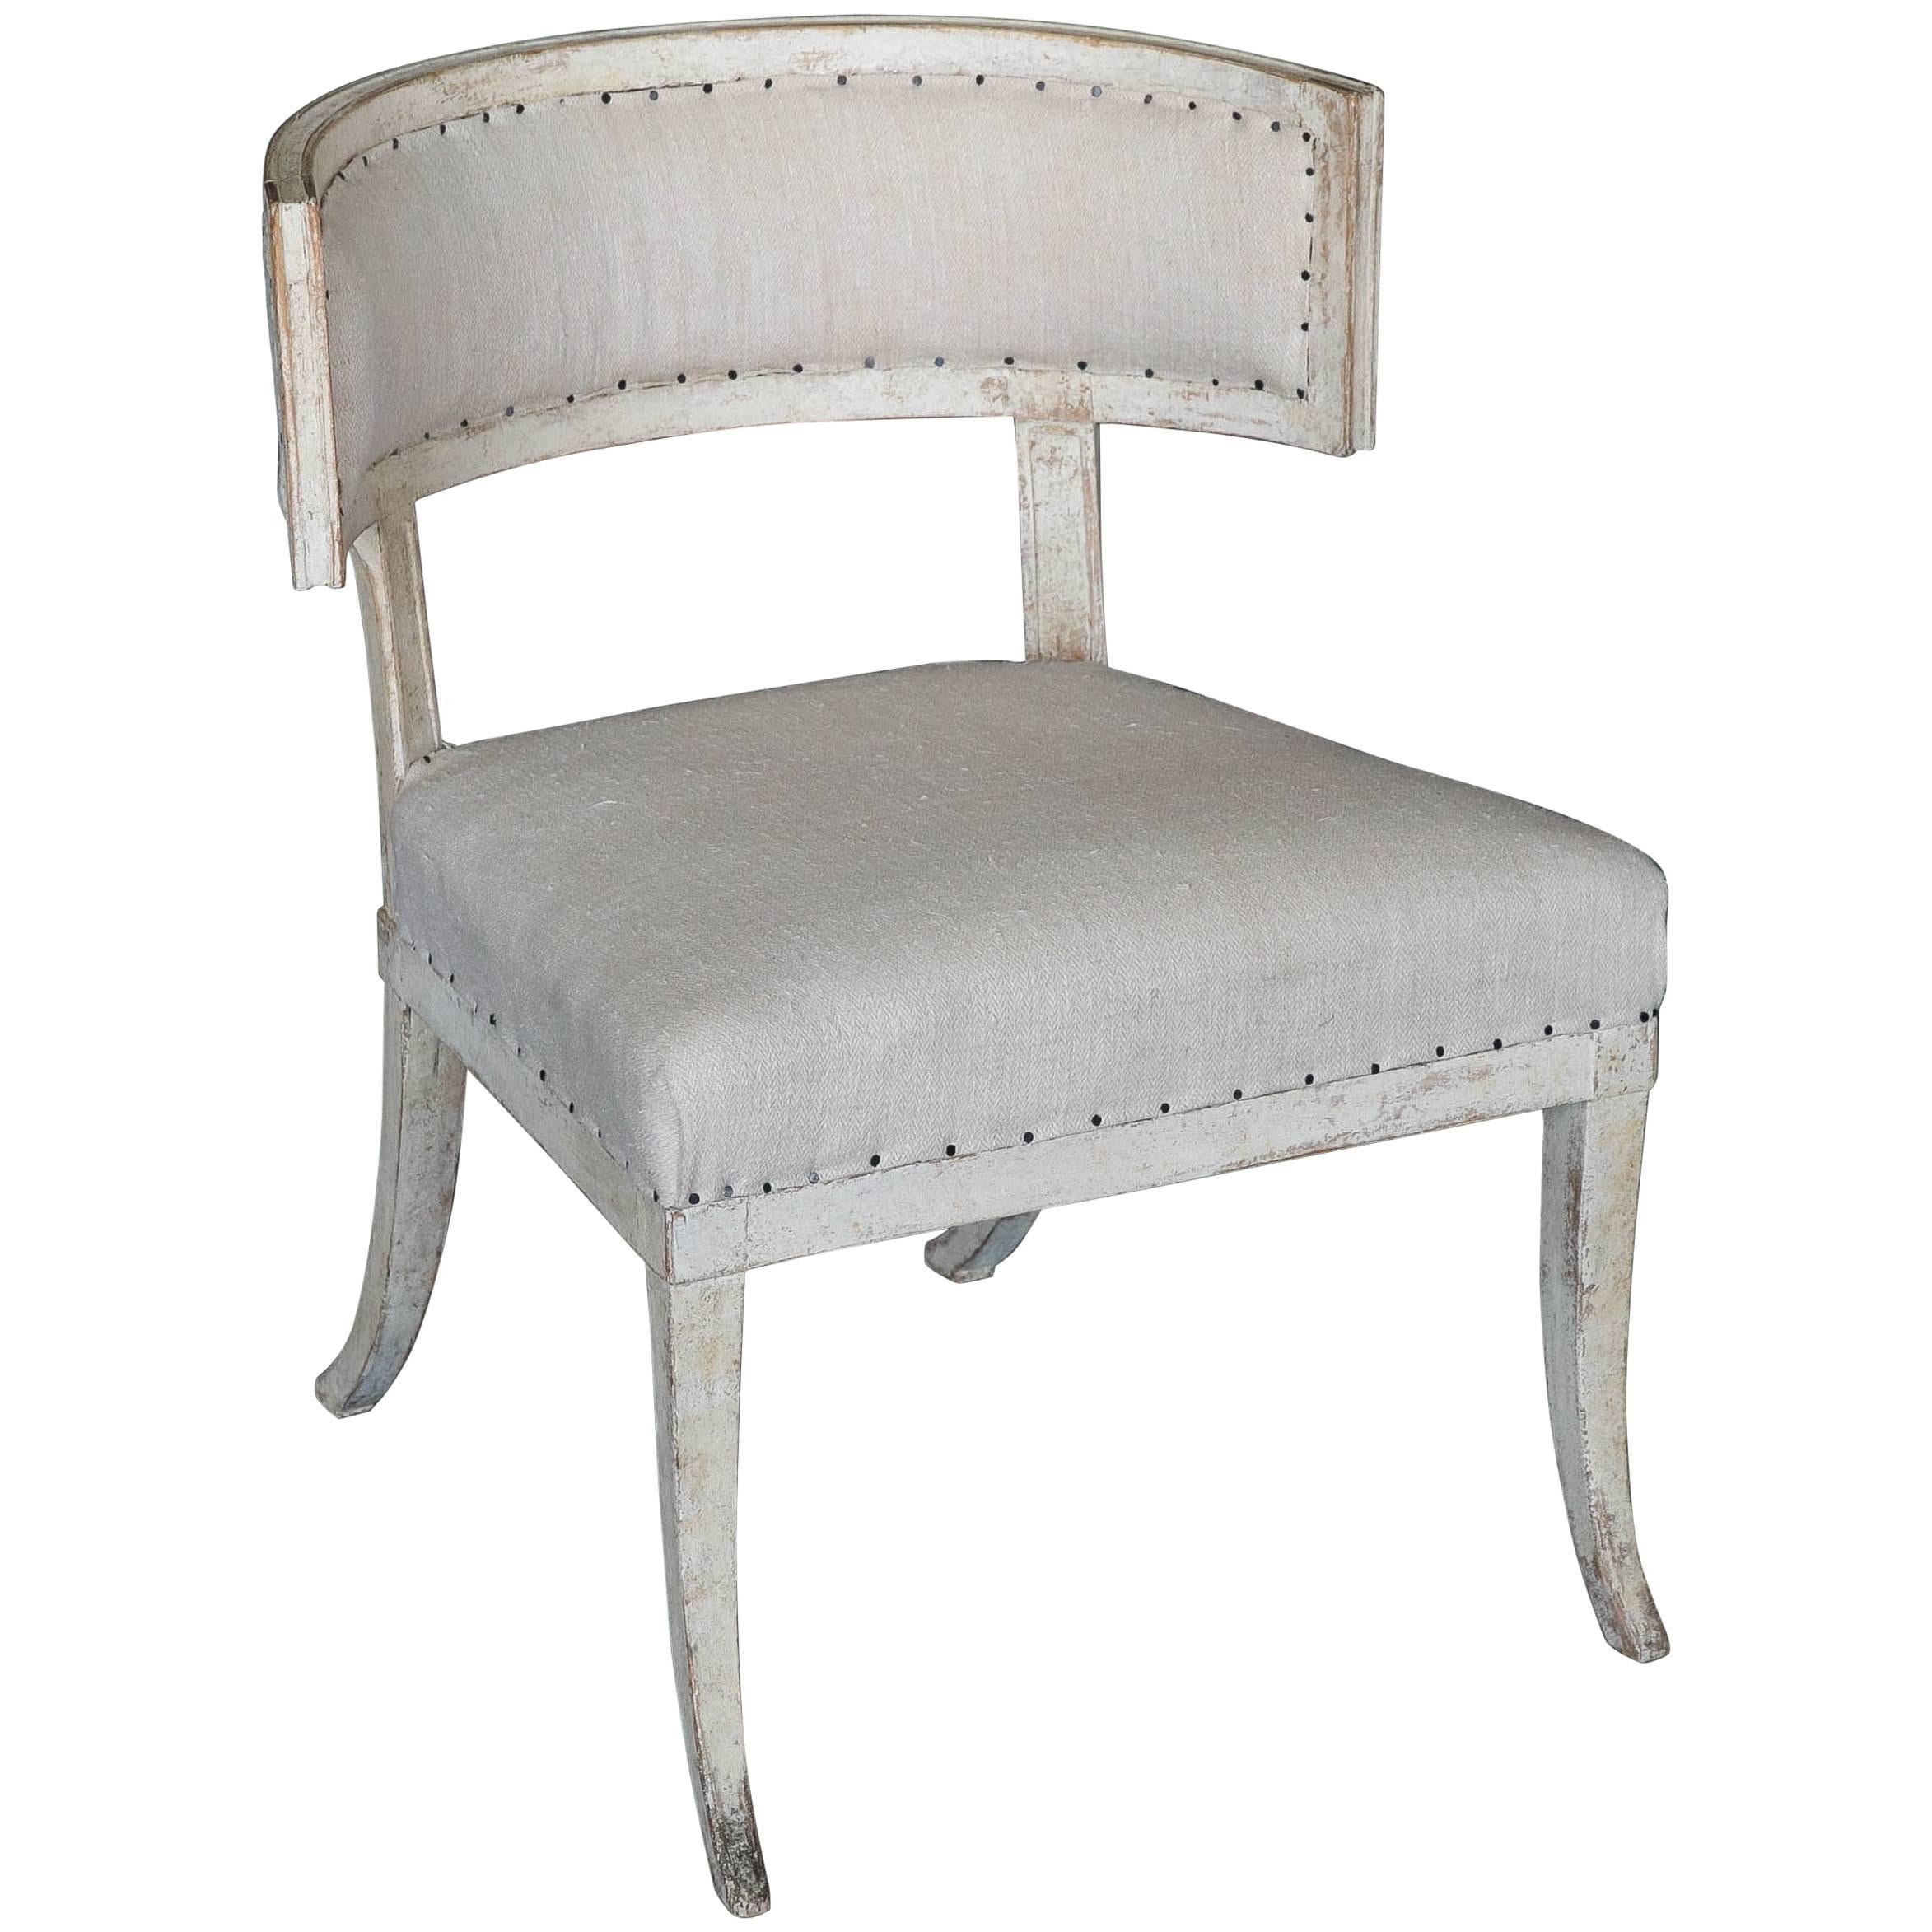 Grande chaise Klismos gustavienne ancienne du 18ème siècle